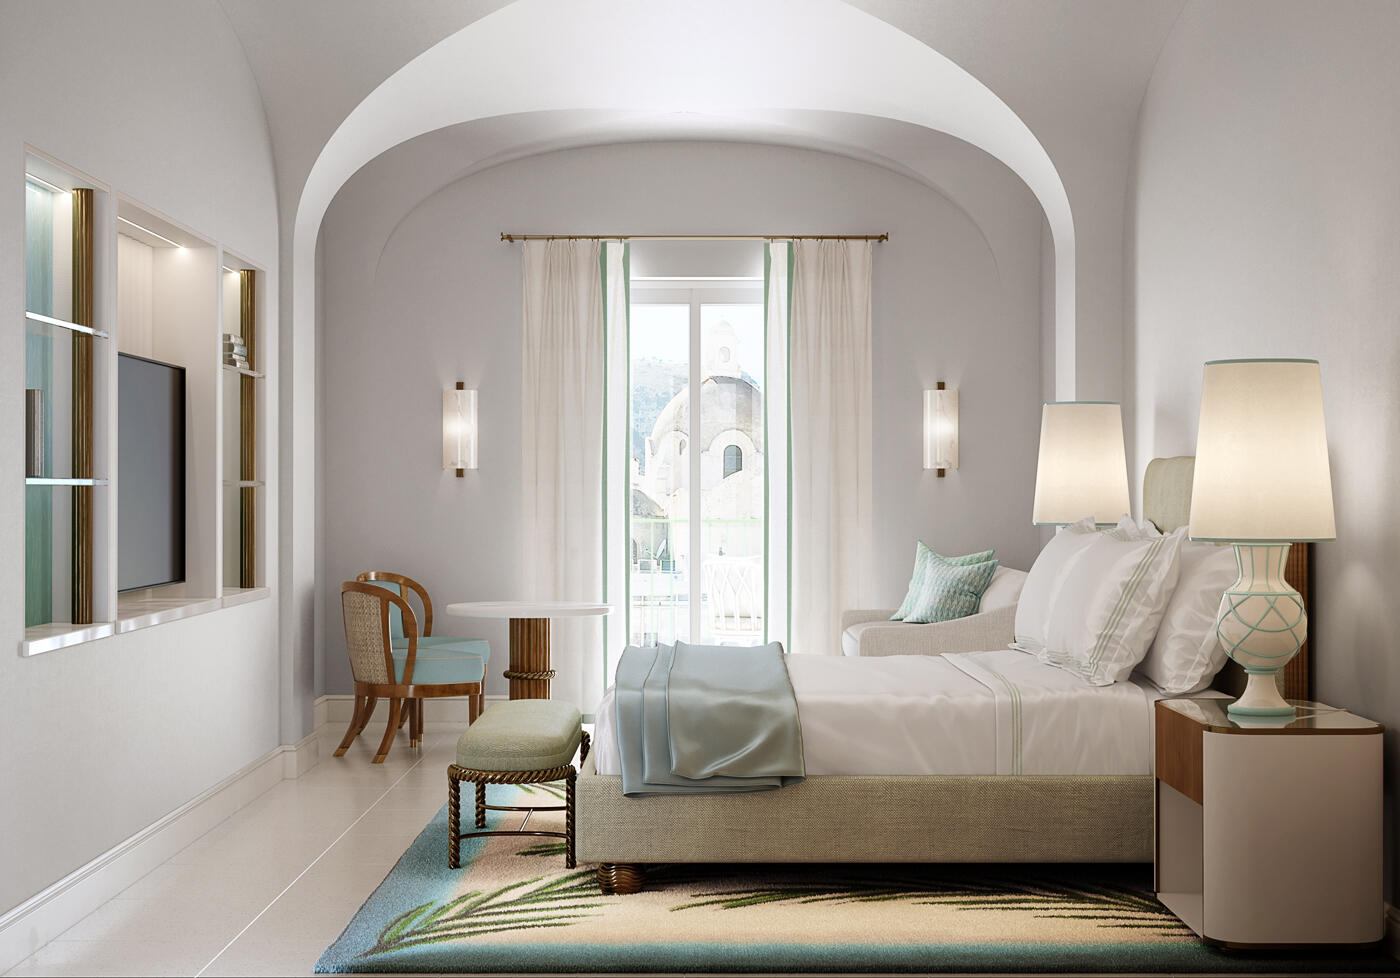 Zimmer im Hotel La Palma mit Doppelbett, hellen schlichten Möbeln und einer Terrassentür